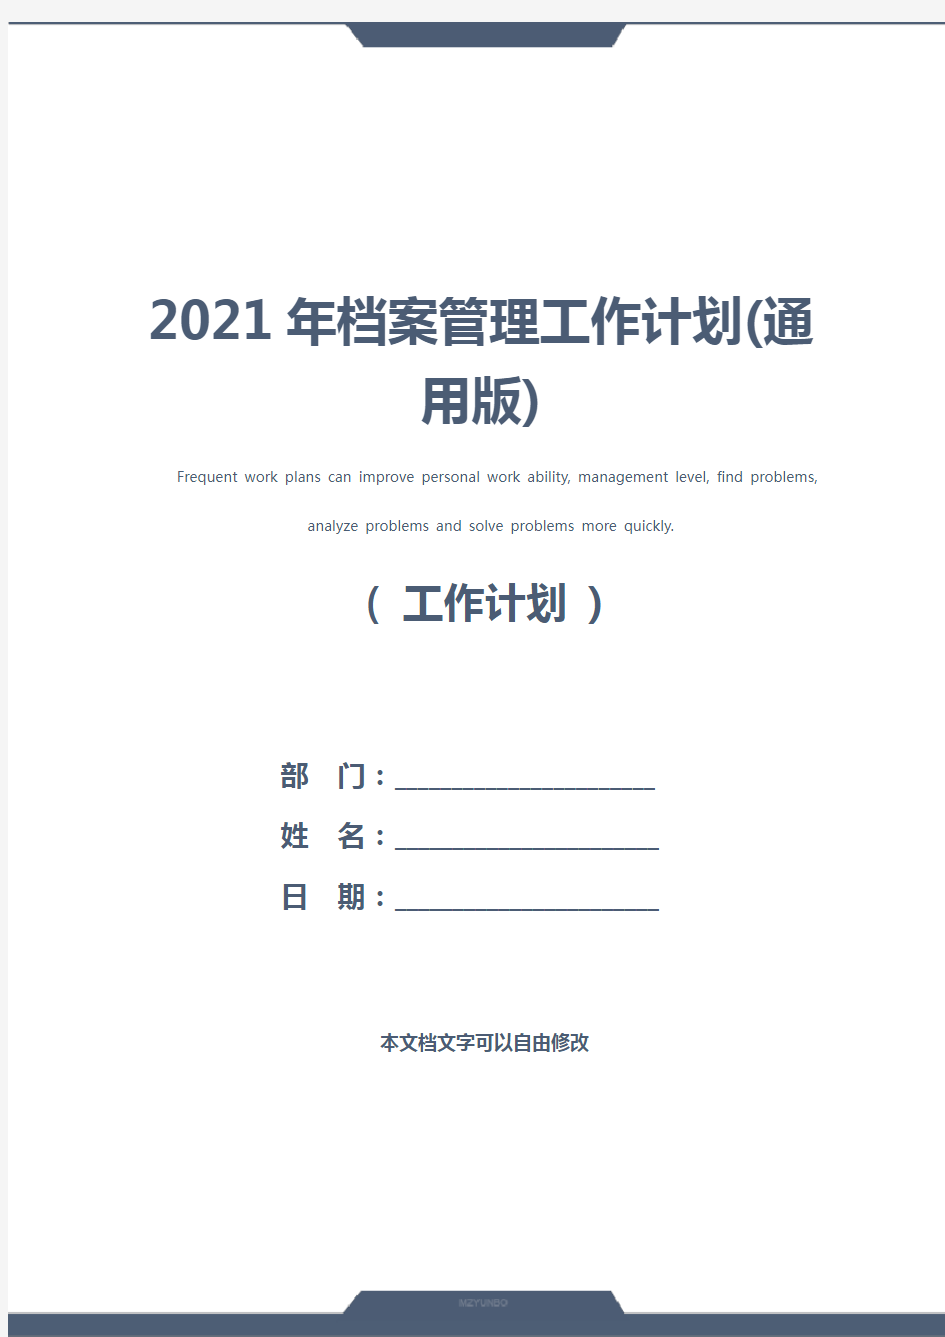 2021年档案管理工作计划(通用版)